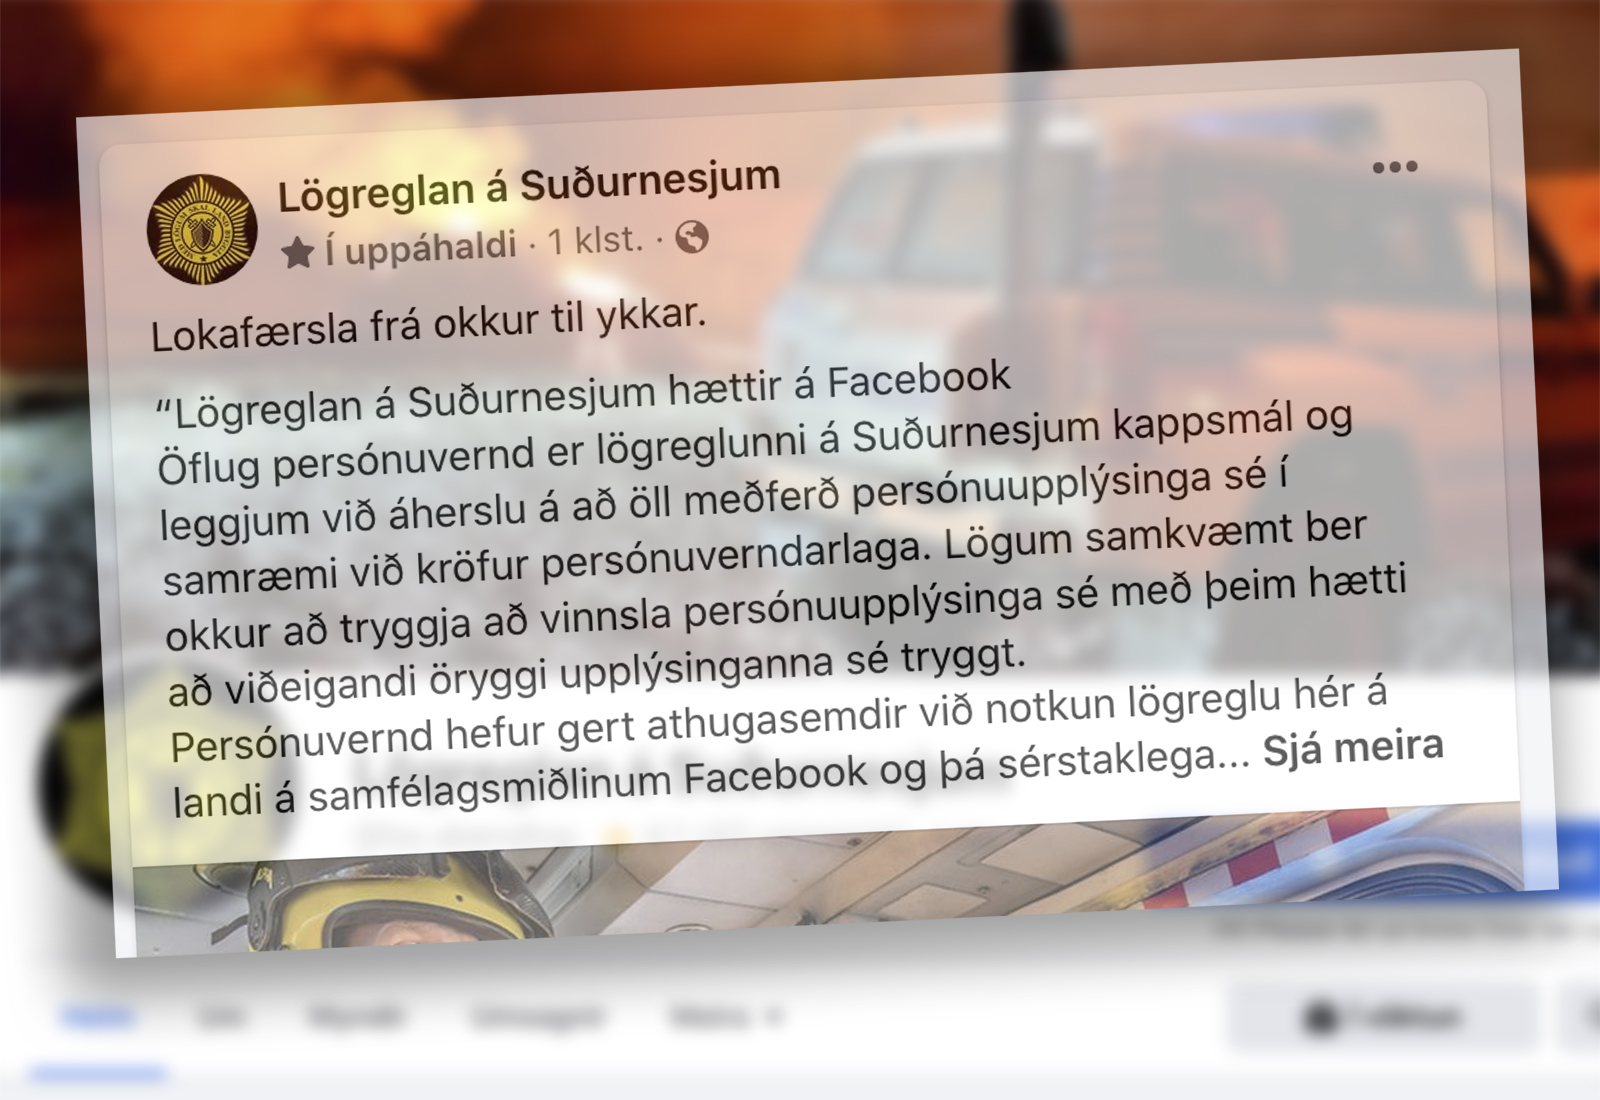 Lögreglan á Suðurnesjum hættir á Facebook